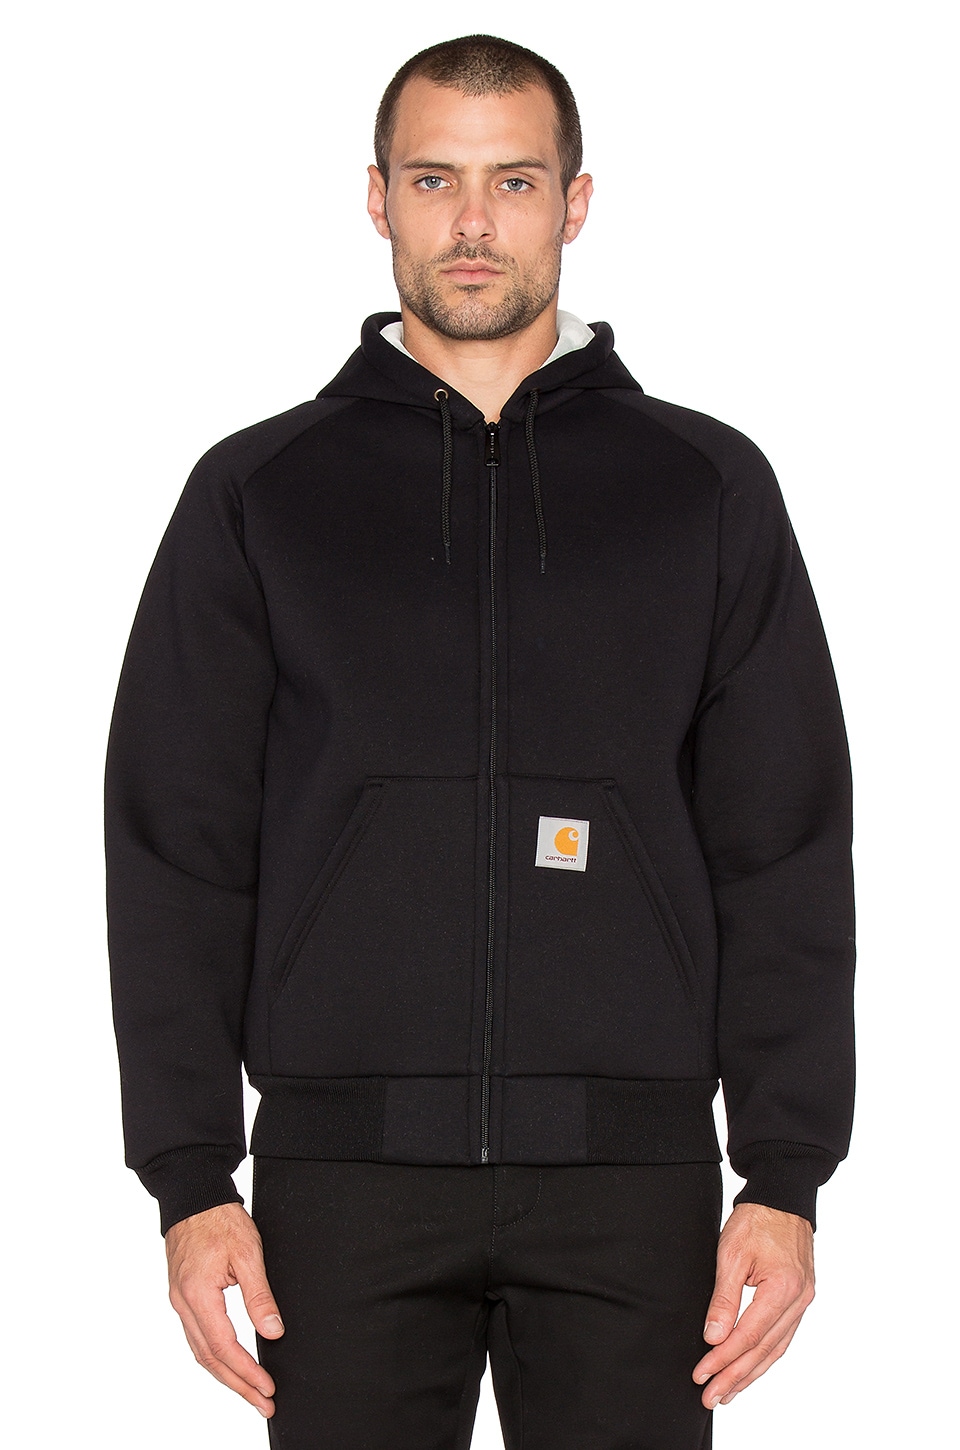 Carhartt WIP Car-Lux Zip Hoodie Jacket in Black & Grey | REVOLVE